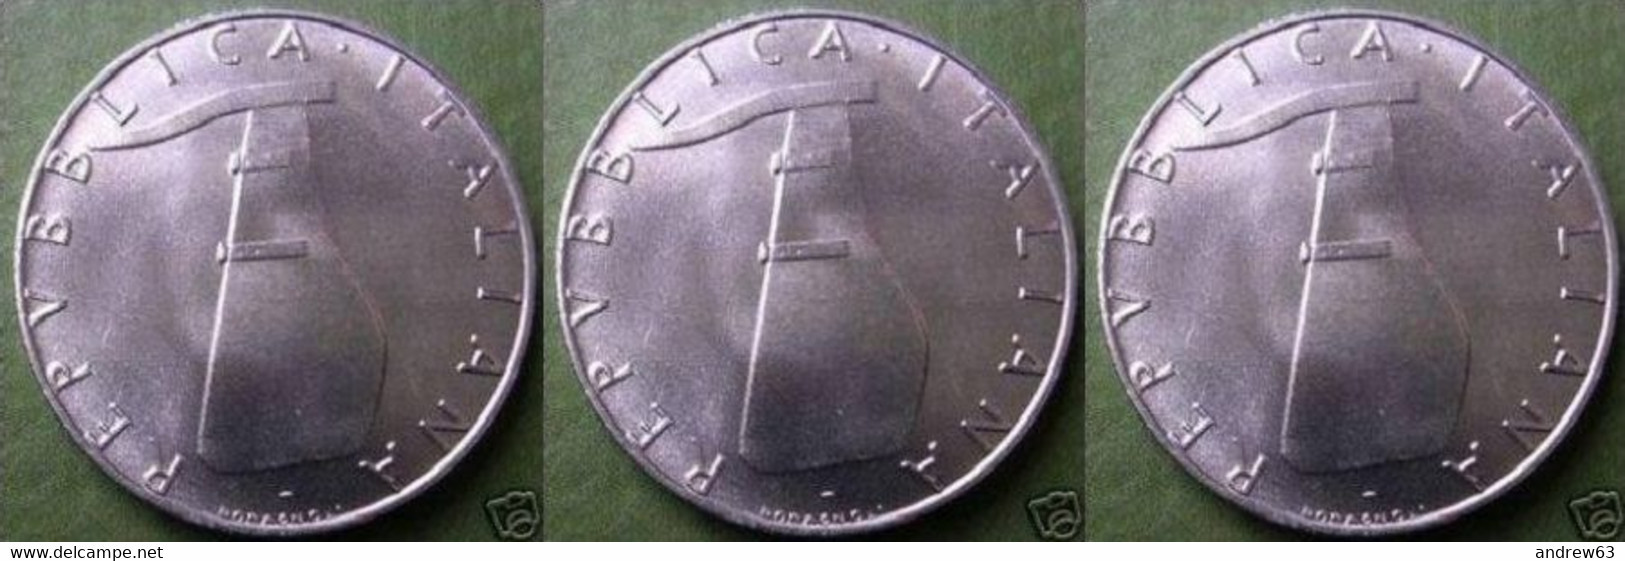 ITALIA - Lire 5 1976 - FDC/Unc Da Rotolino/from Roll 3 Monete/3 Coins - 5 Lire